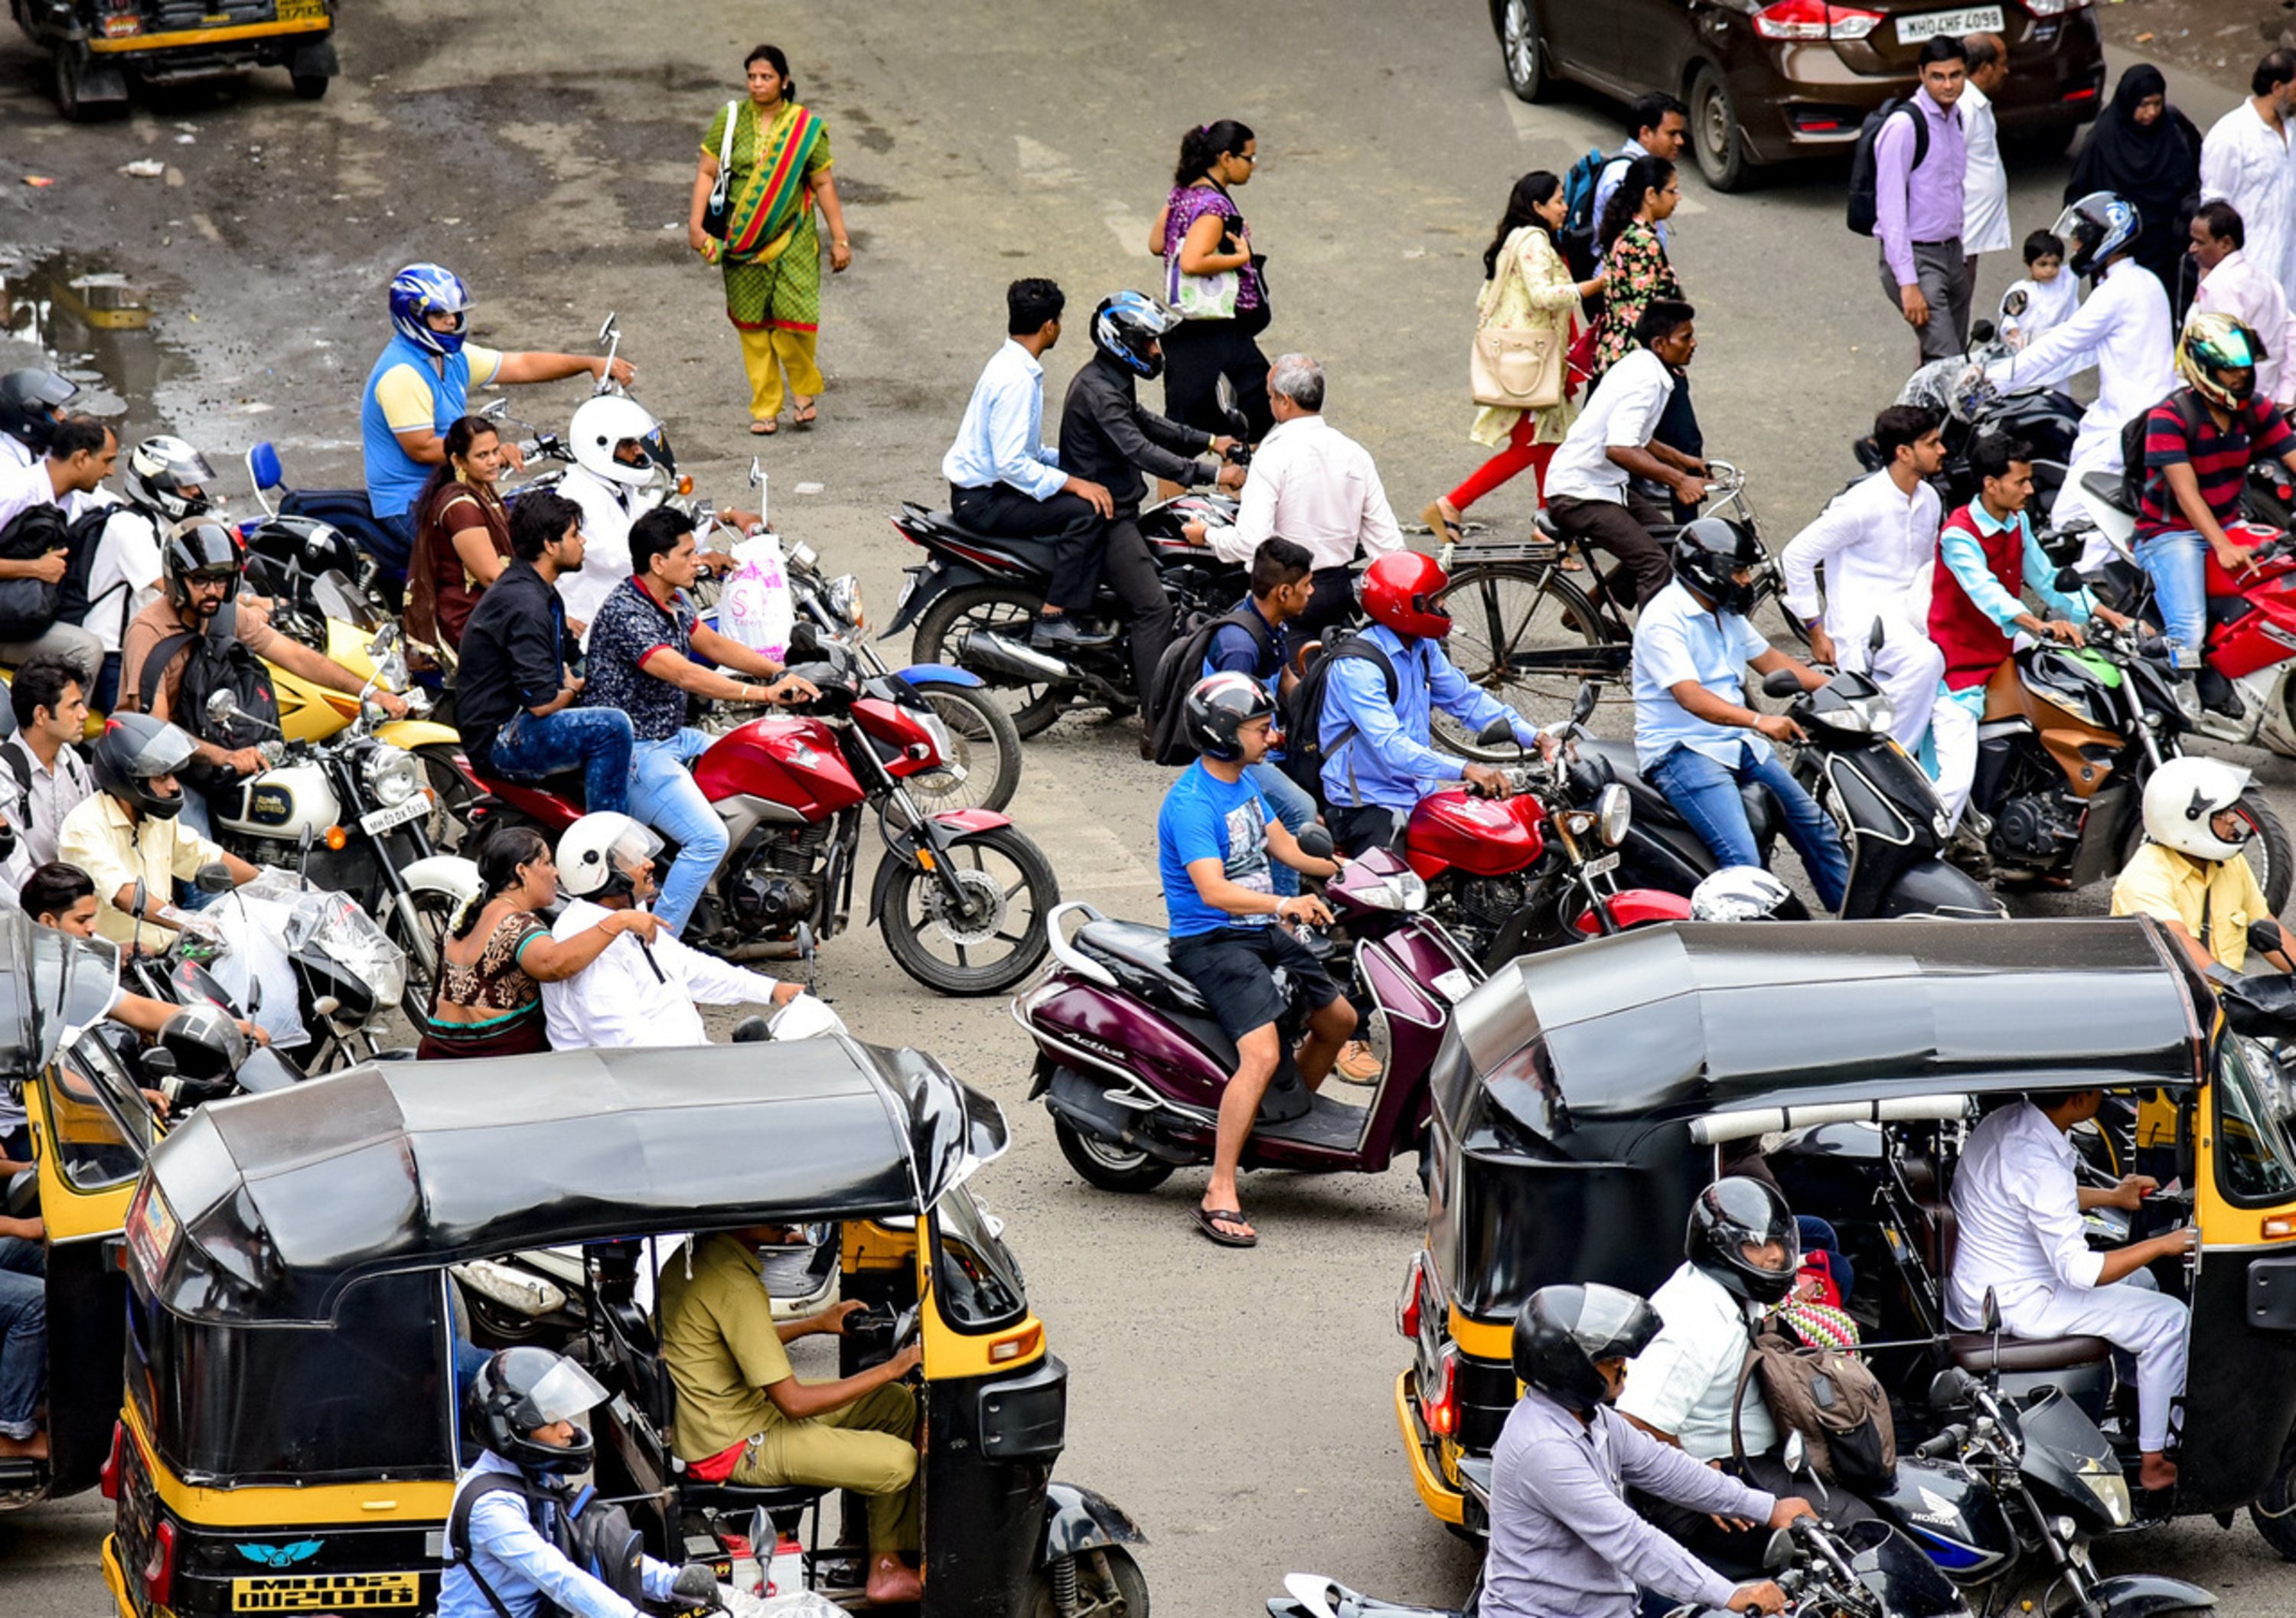 Le citt&agrave; e i Paesi del mondo che si preparano a vietare le moto